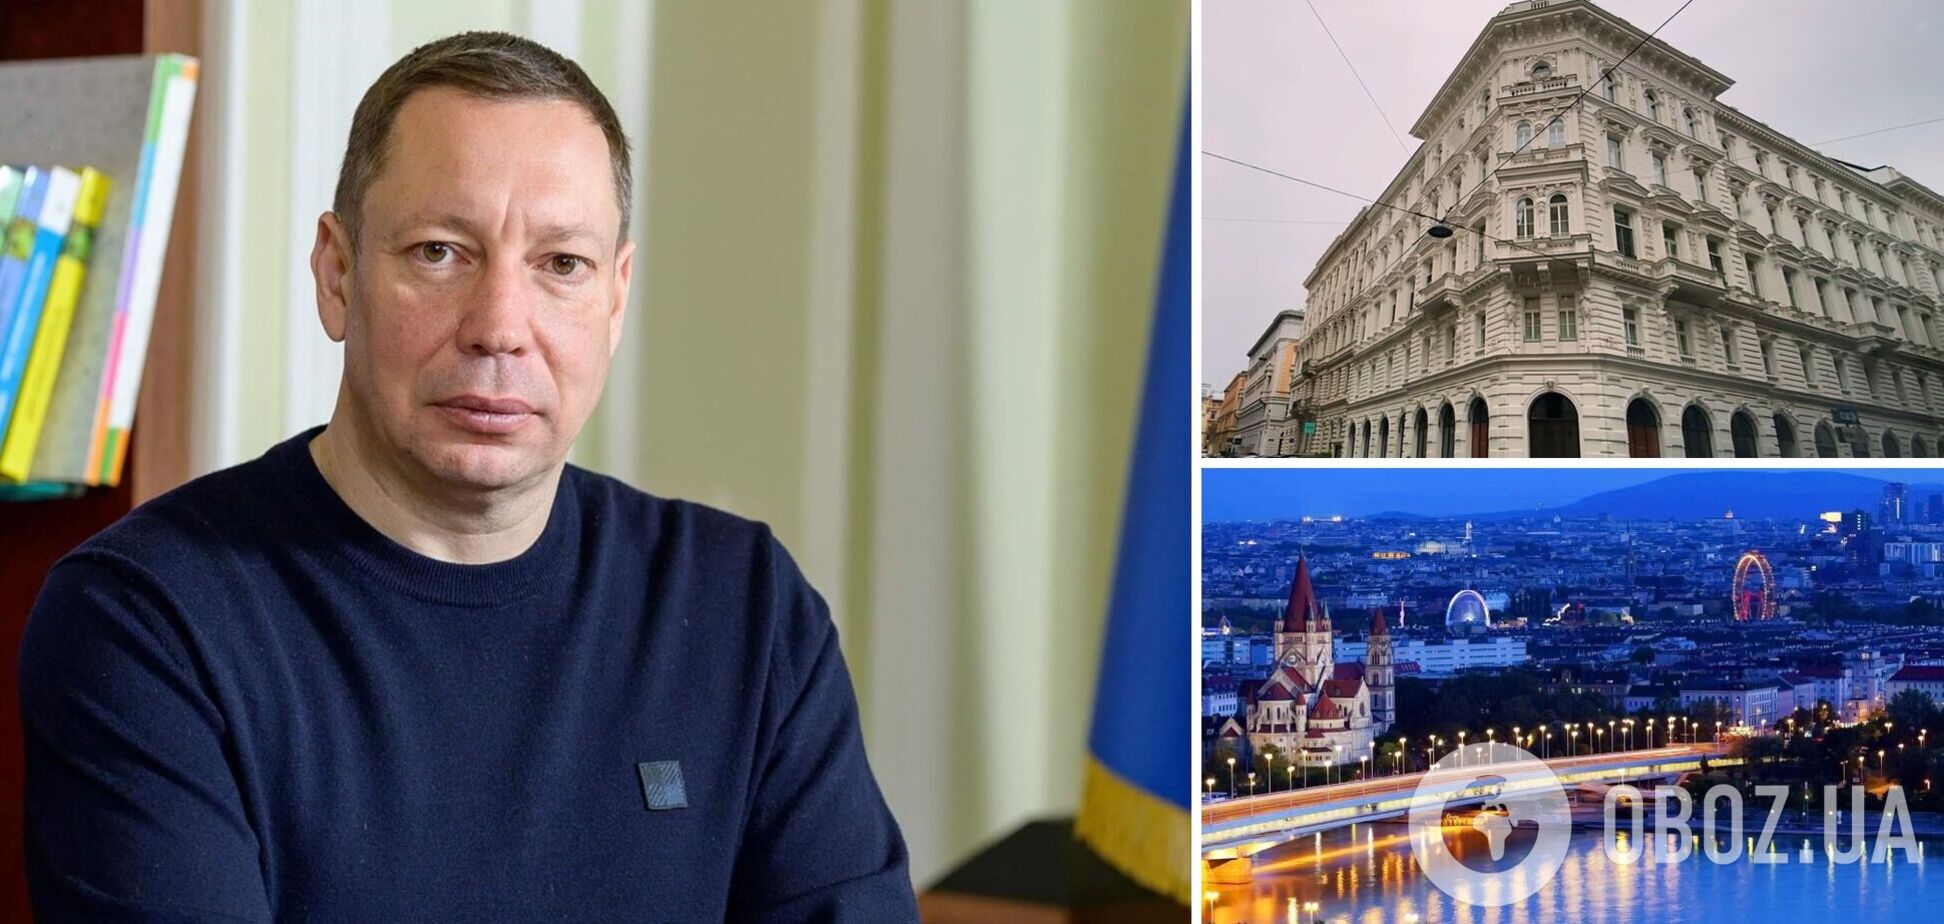 Оголошений у розшук ексглава НБУ Шевченко перебуває у Відні: ЗМІ з'ясували деталі 